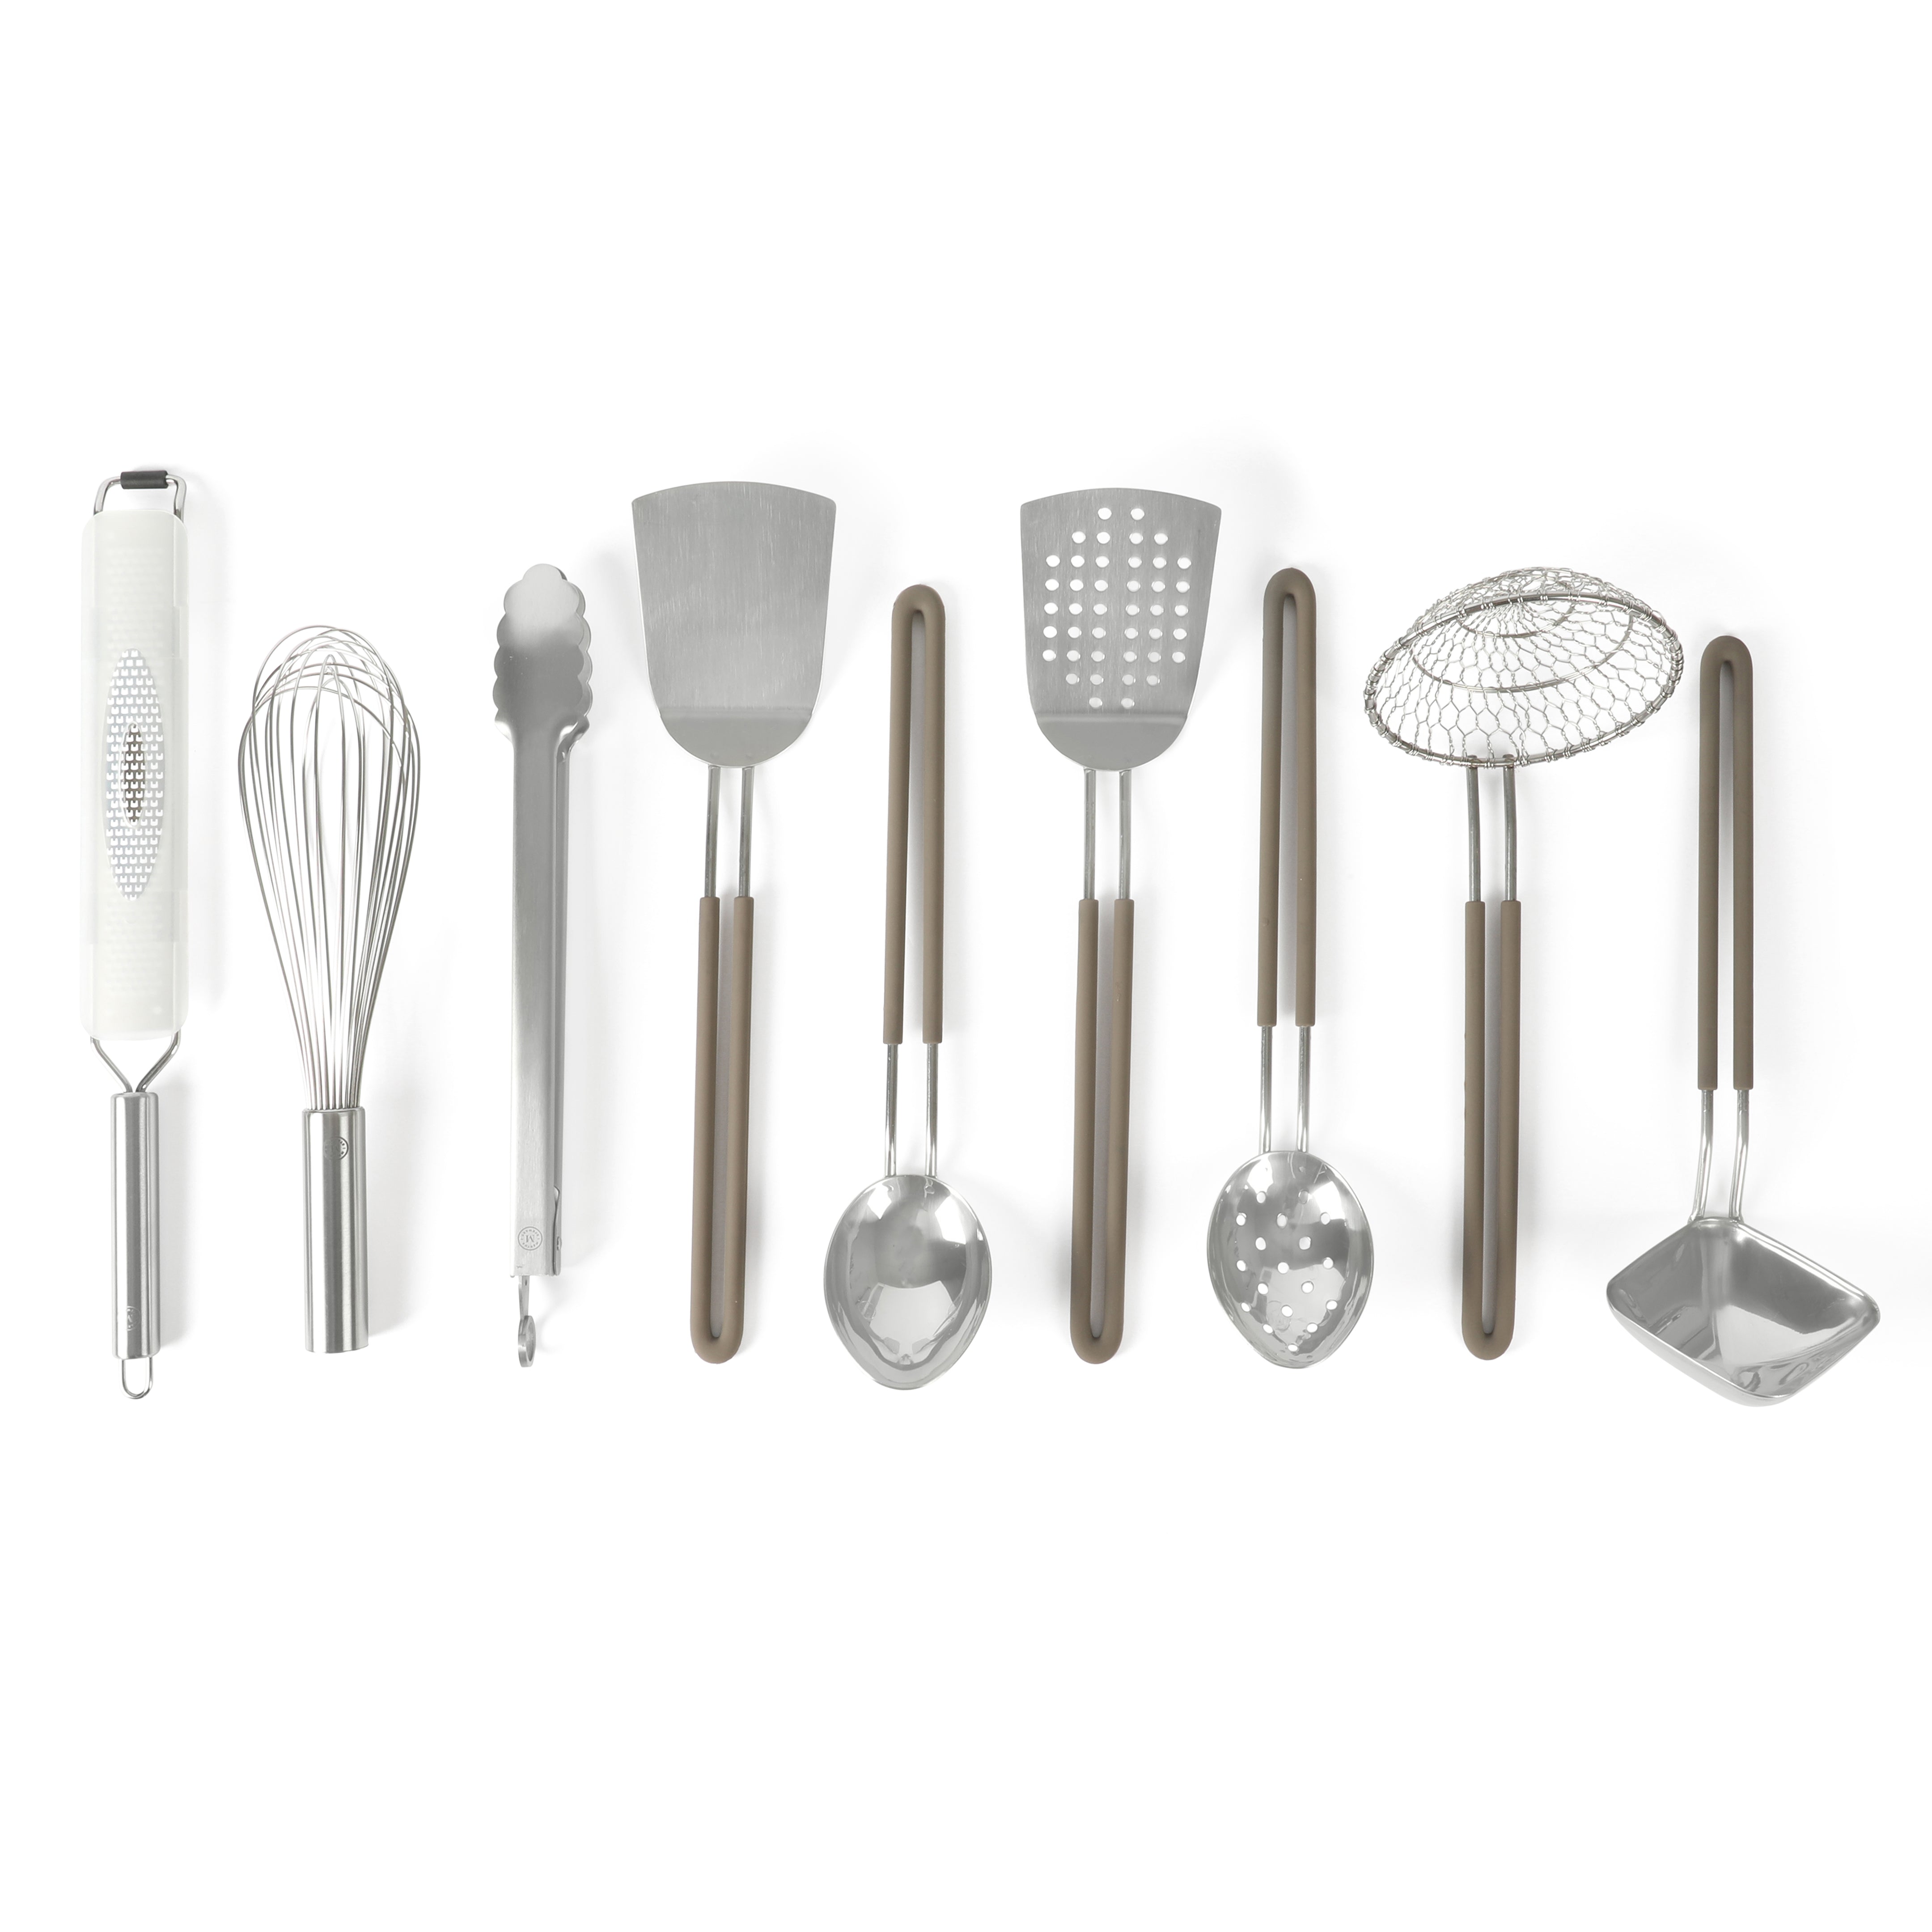 Martha Stewart 9-Piece Stainless Steel Prep & Serve Kitchen Gadgets and Tool Set